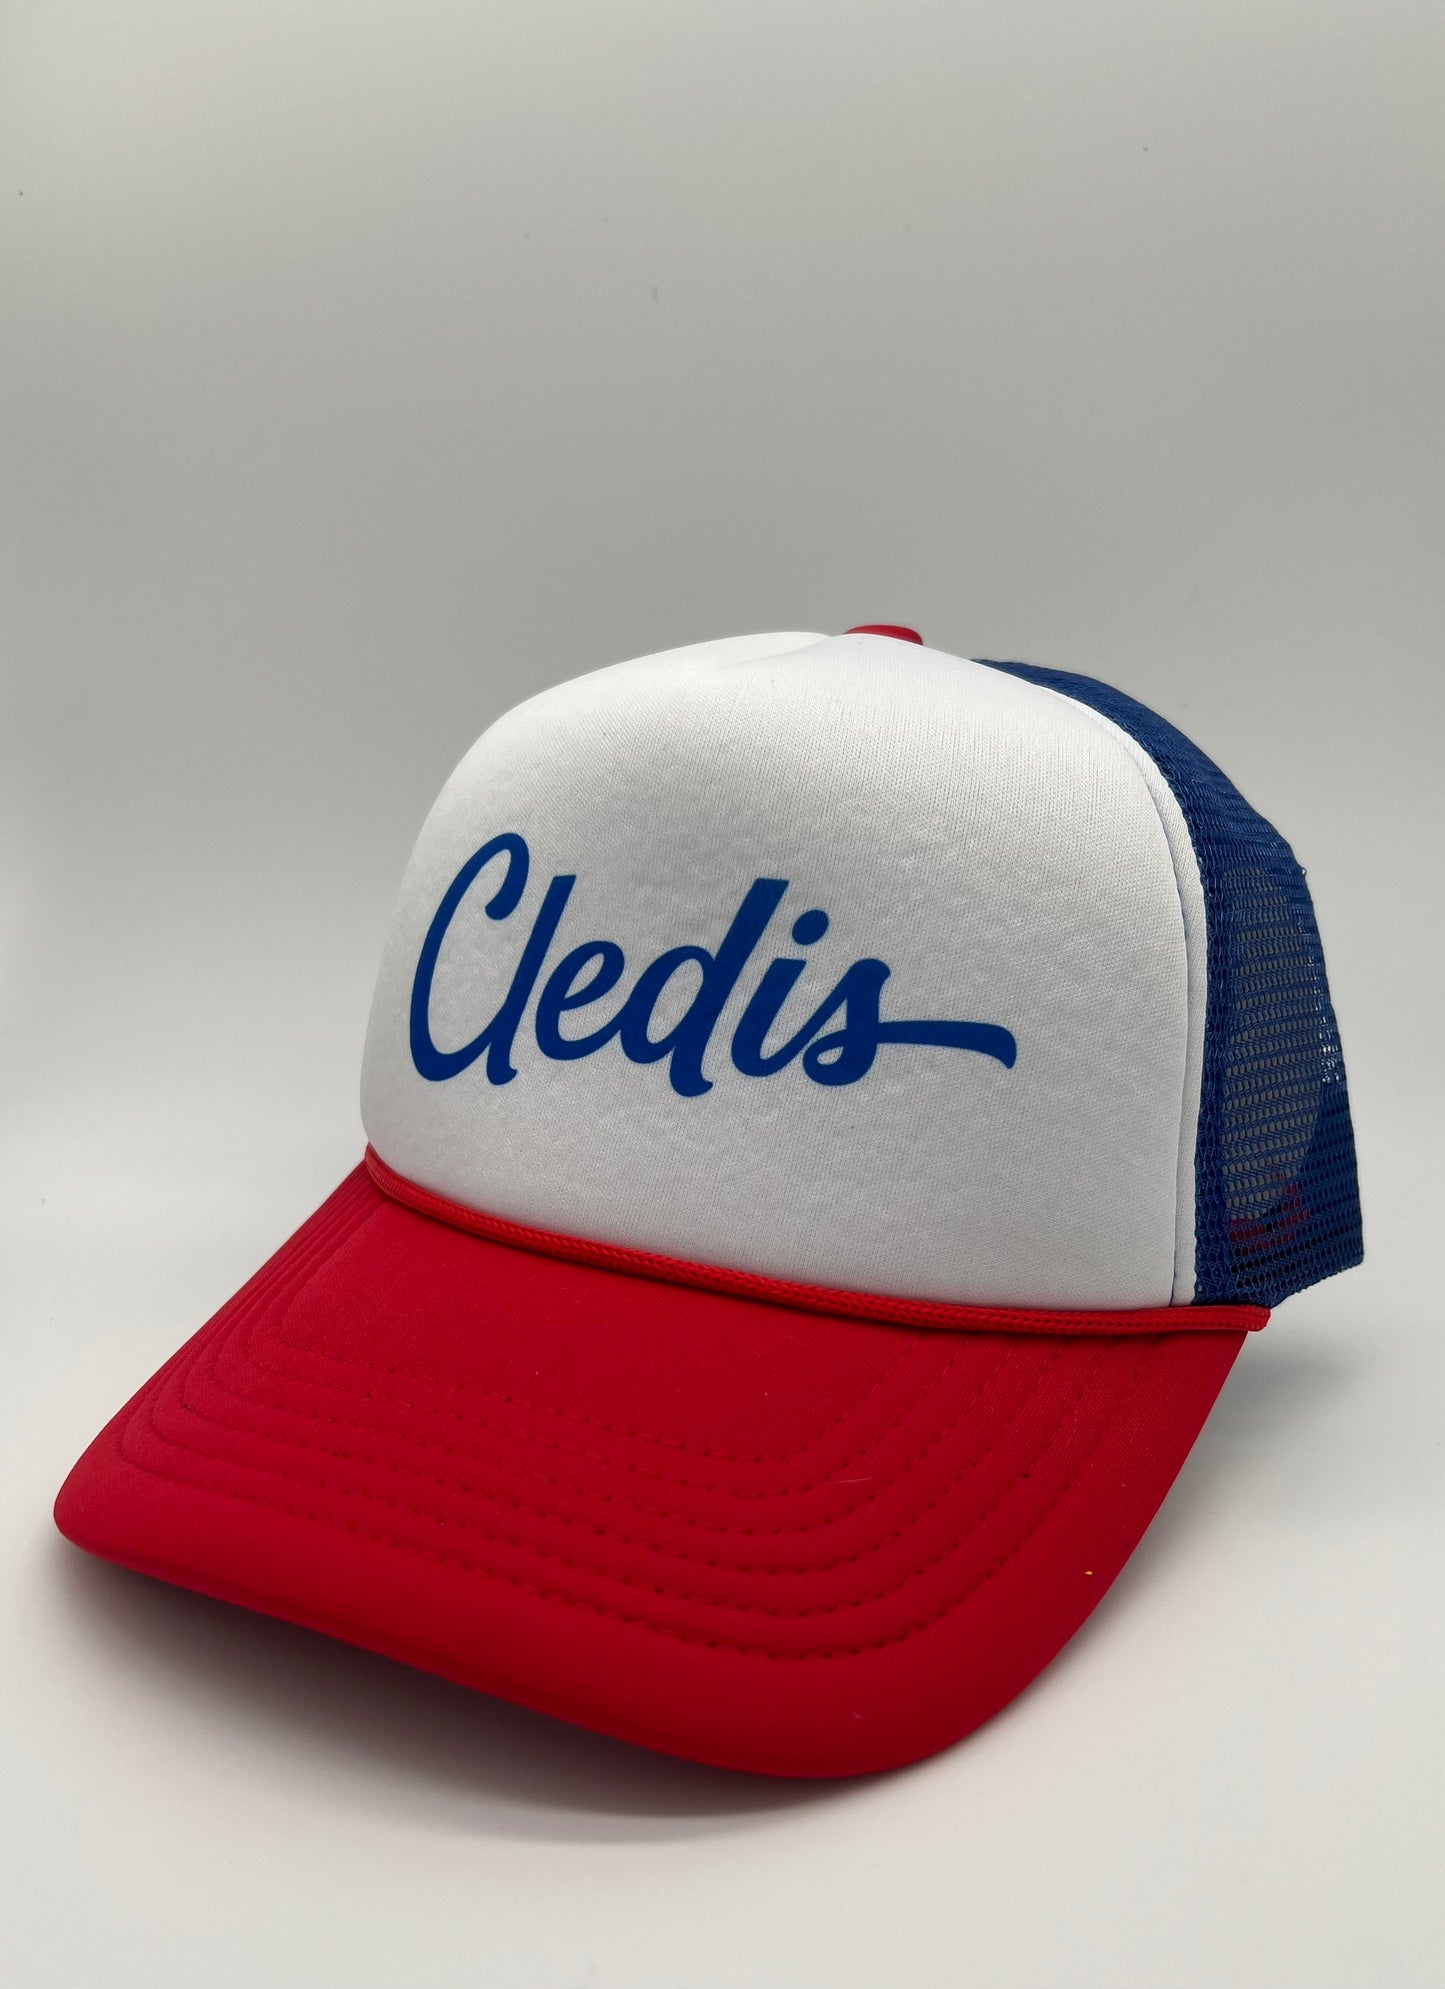 Red, White & Blue Cledis Trucker Hat